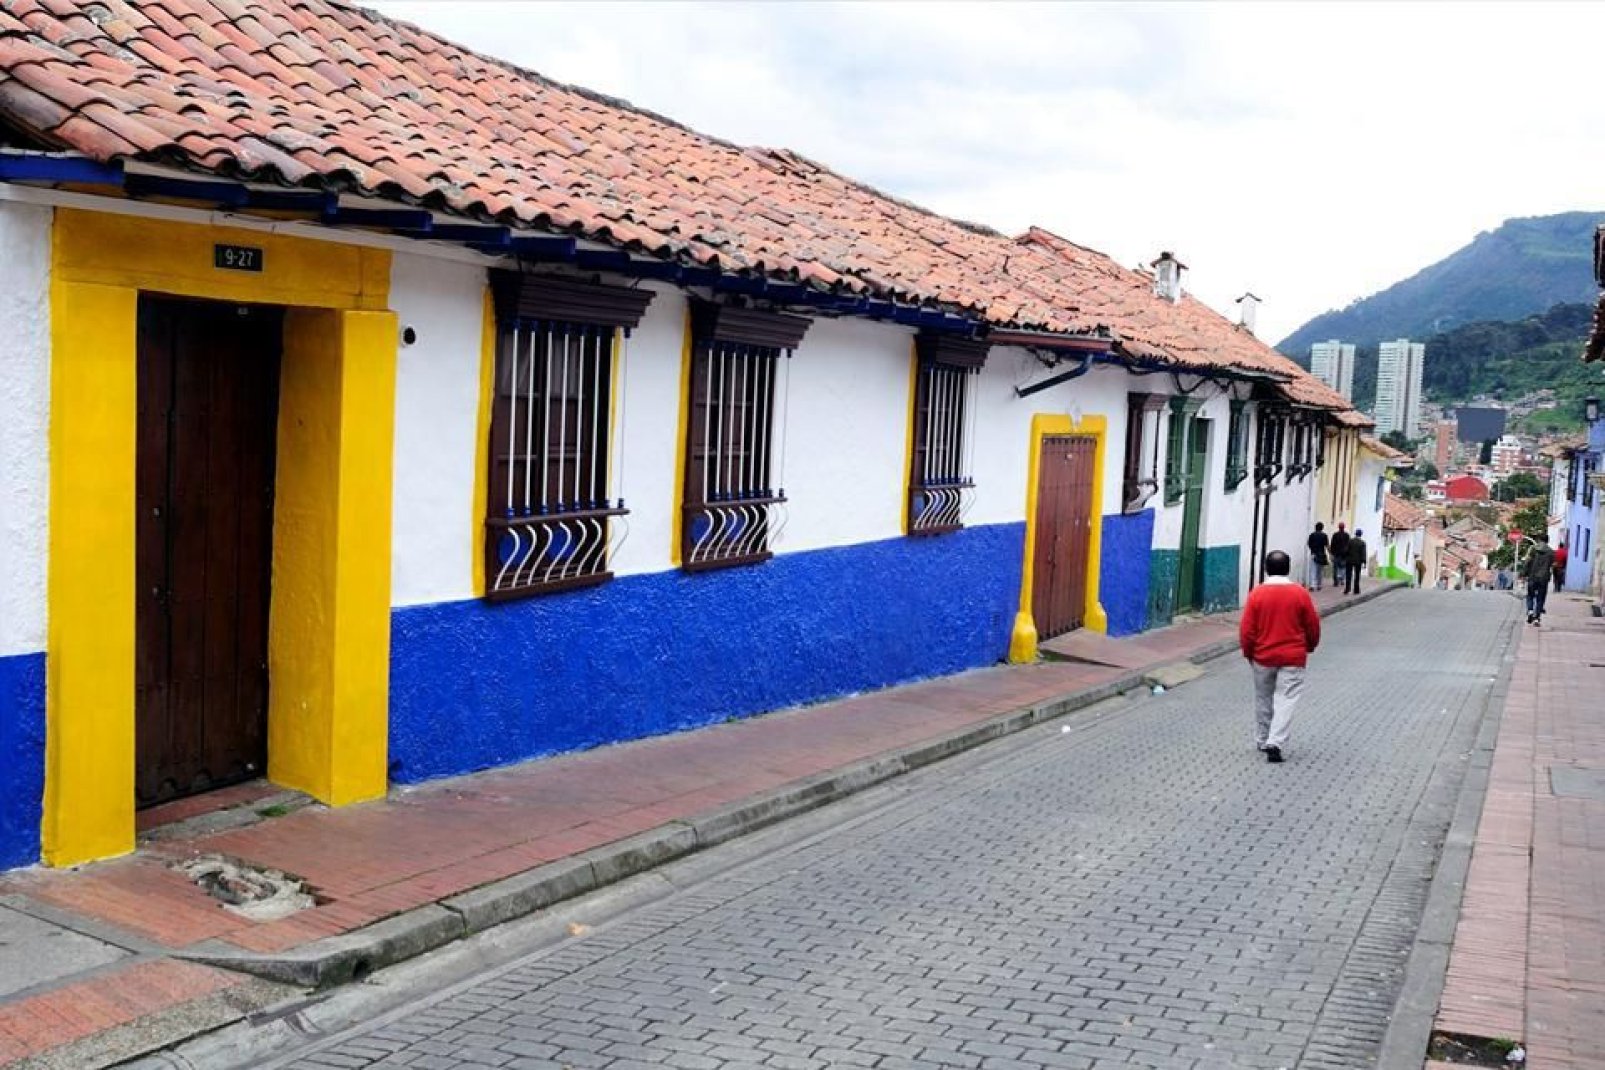 Bogota ist immer noch stark von der Kolonialzeit geprägt, davon zeugen die Häuser im spanischen Baustil.